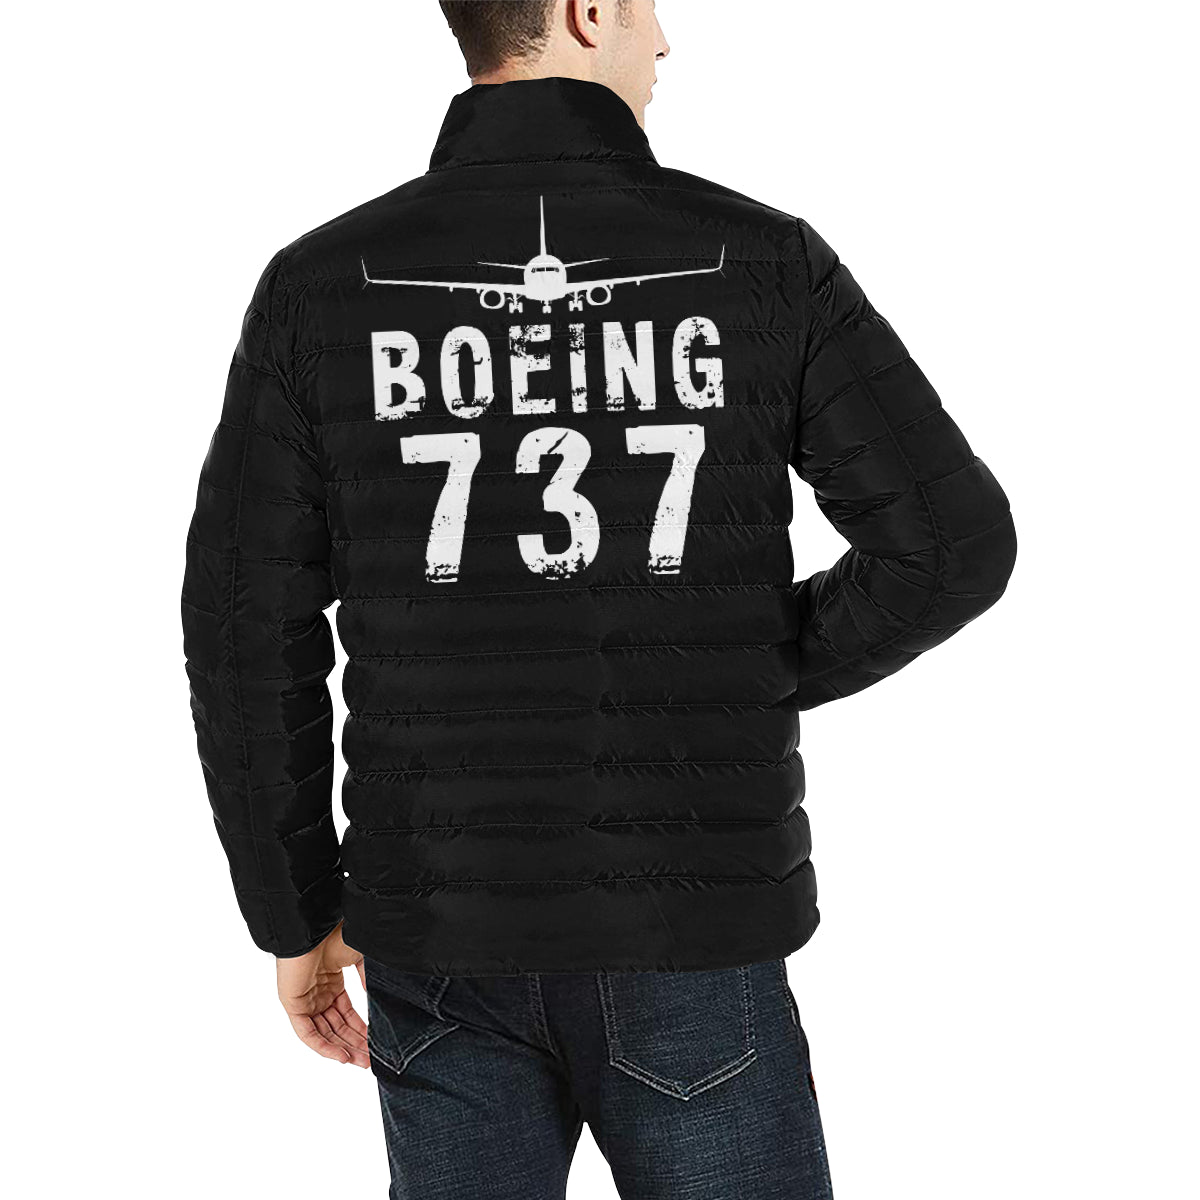 BOEING 737 Men's Stand Collar Padded Jacket e-joyer